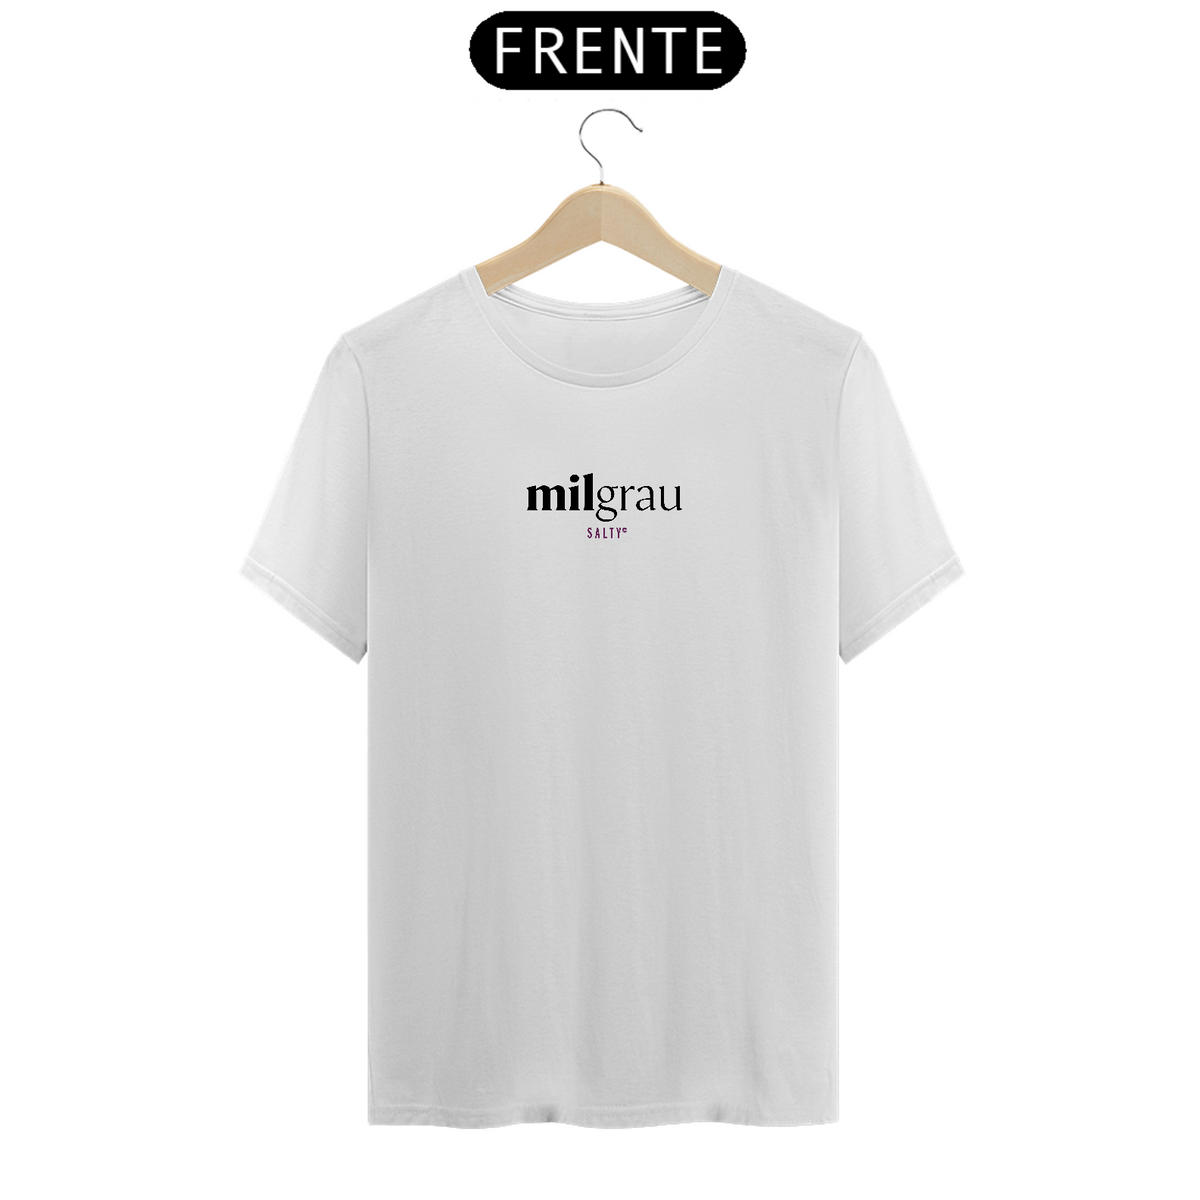 Nome do produto: Camiseta Mil grau